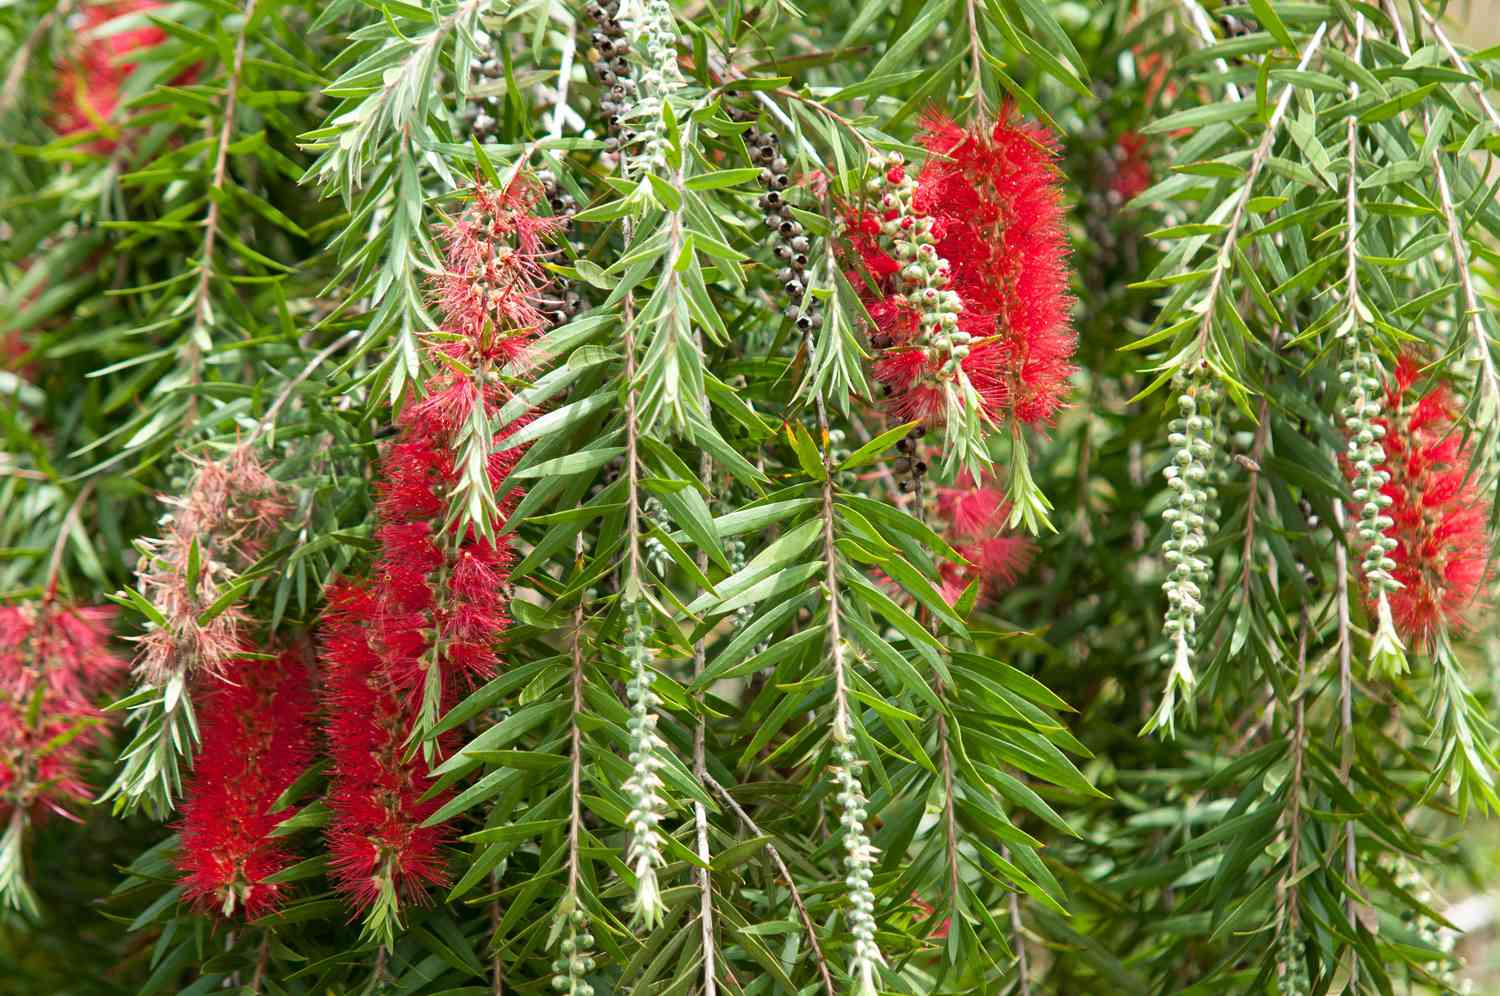 Karminroter Flaschenbusch mit roten flaschenbuschähnlichen Blüten, die von Zweigen mit kurzen, blattähnlichen Blättern hängen